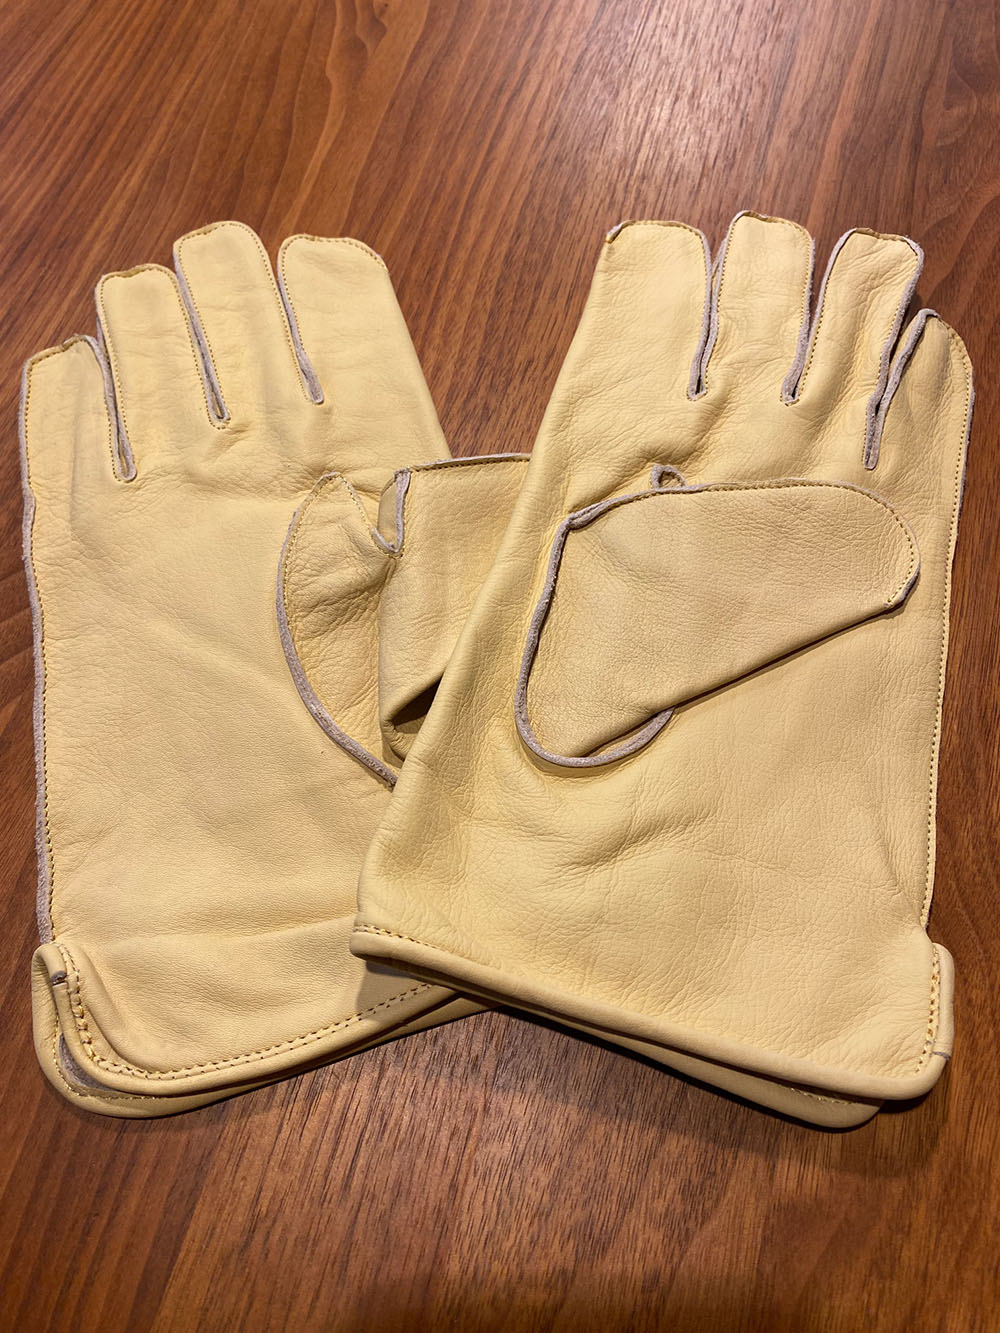 Paratrooper Gloves 1 kl